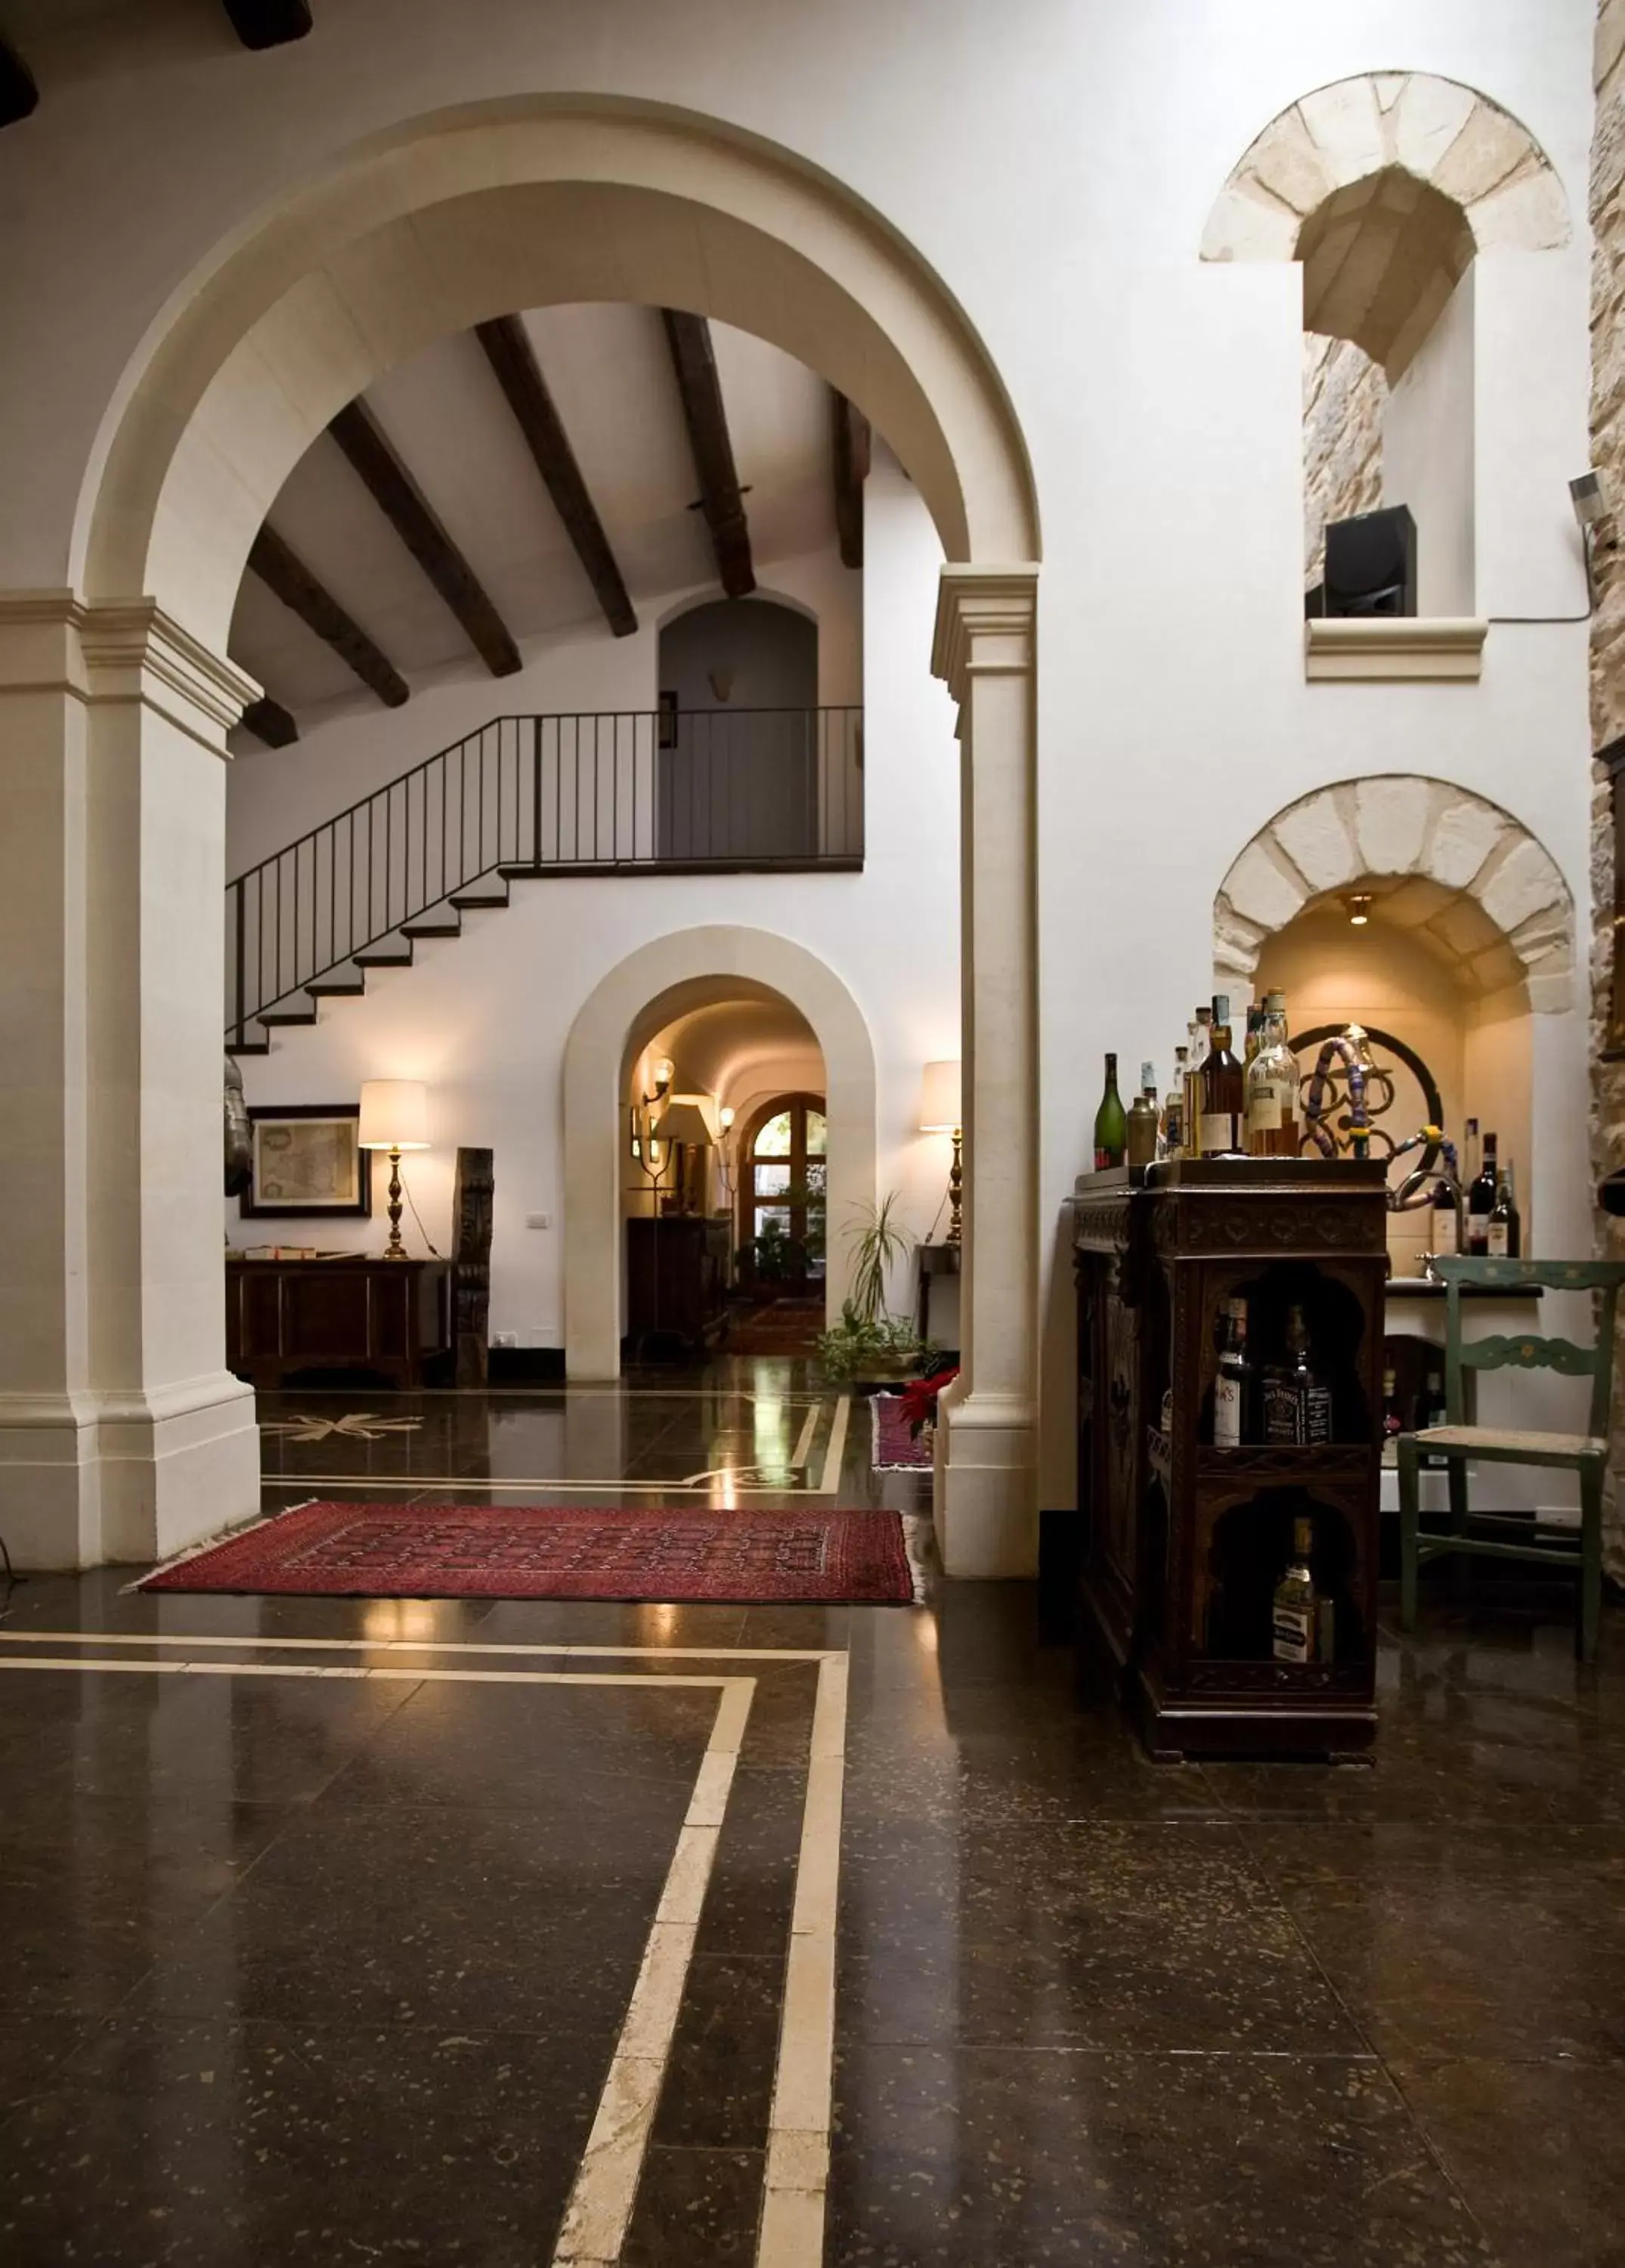 Lobby or reception in Eremo Della Giubiliana